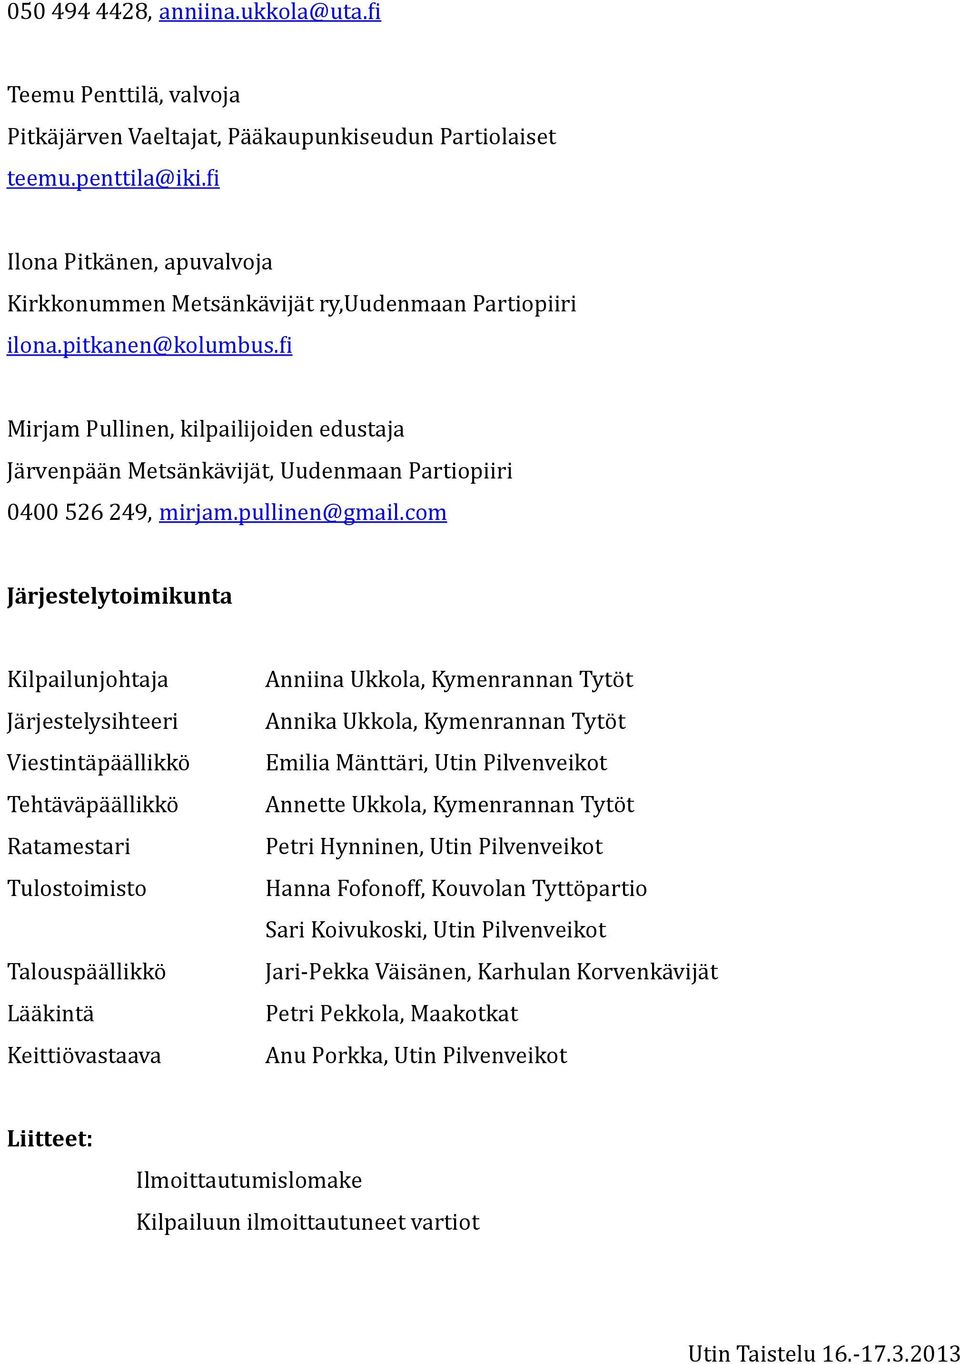 fi Mirjam Pullinen, kilpailijoiden edustaja Järvenpään Metsänkävijät, Uudenmaan Partiopiiri 0400 526 249, mirjam.pullinen@gmail.